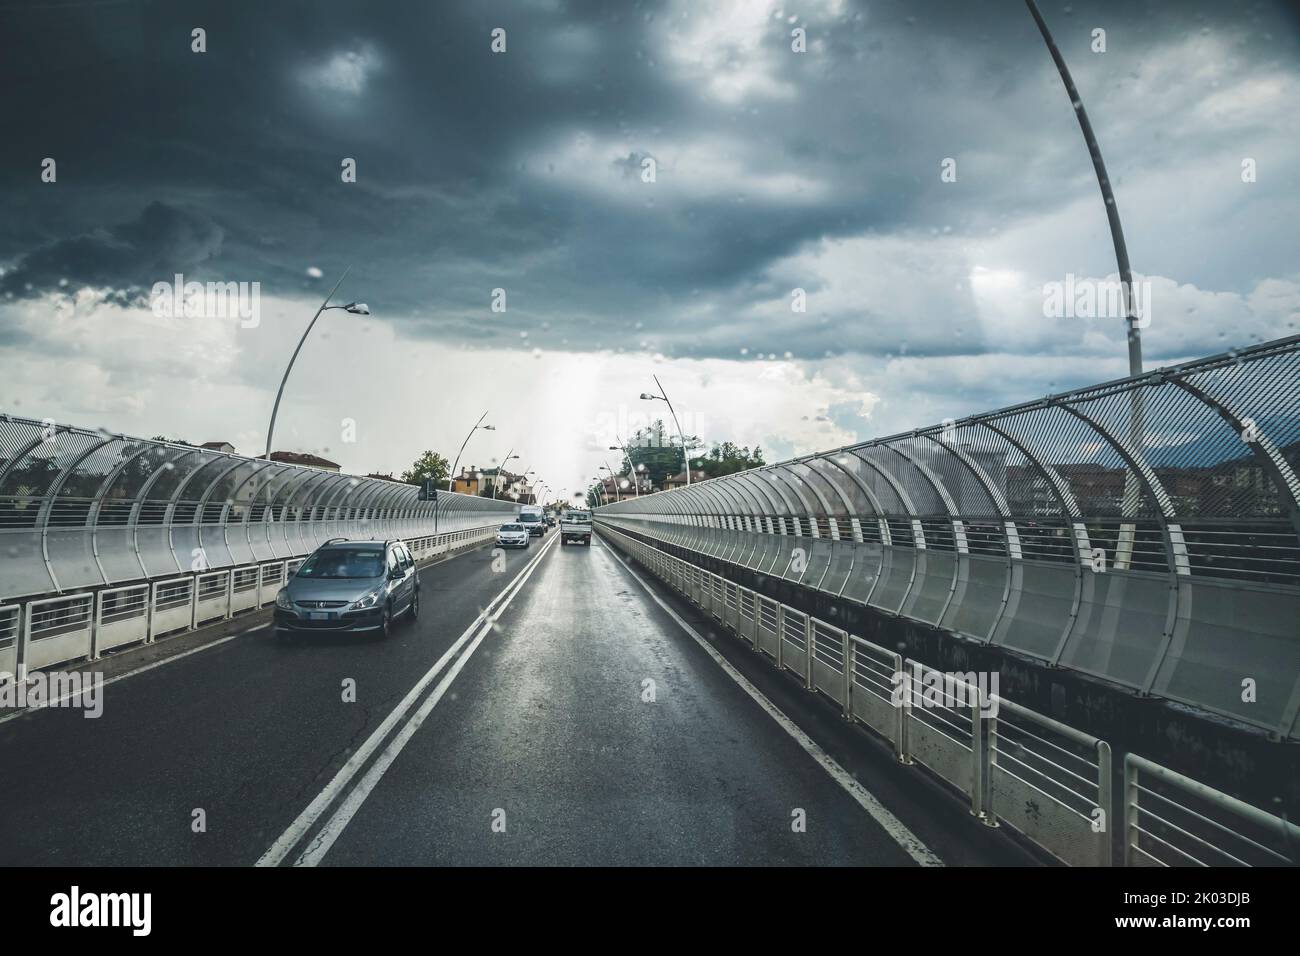 Italie, Vénétie, Belluno. Vue sur la route depuis l'intérieur d'une voiture, avec un ciel spectaculaire et un orage venant en sens inverse Banque D'Images